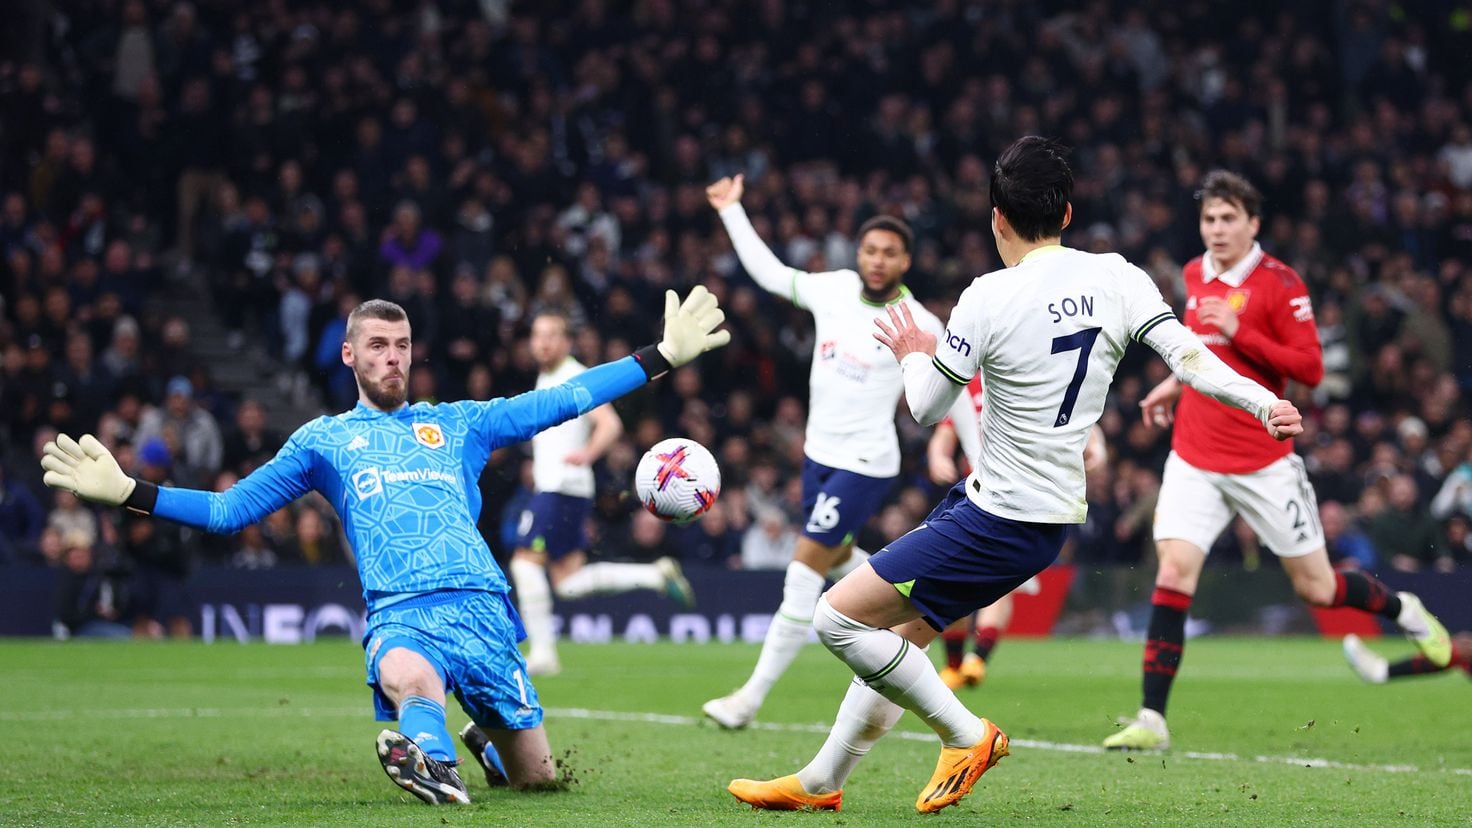 Com gol de Son, Tottenham empata com Manchester United no Campeonato Inglês  - Superesportes